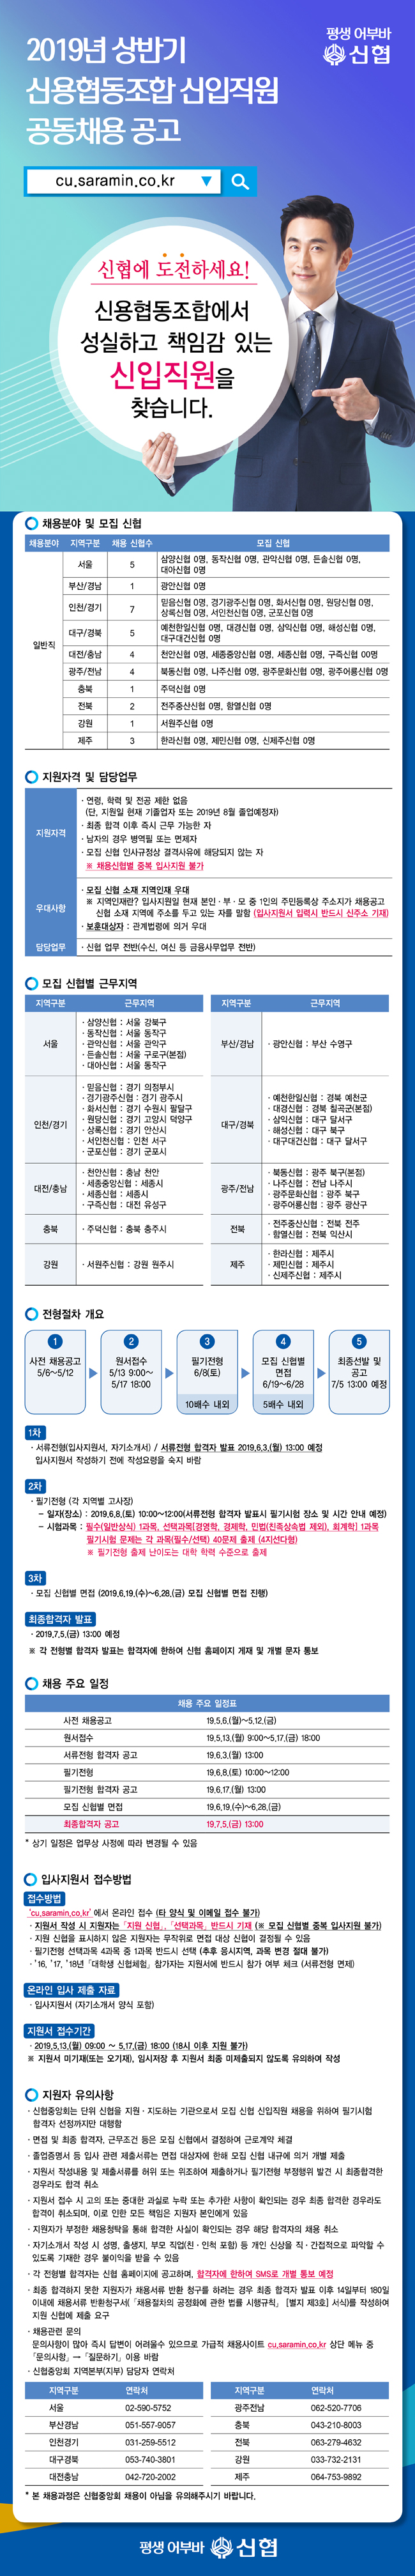 2019년 상반기 신협 신입직원 공동채용 공고. 하단 첨부파일 다운로드